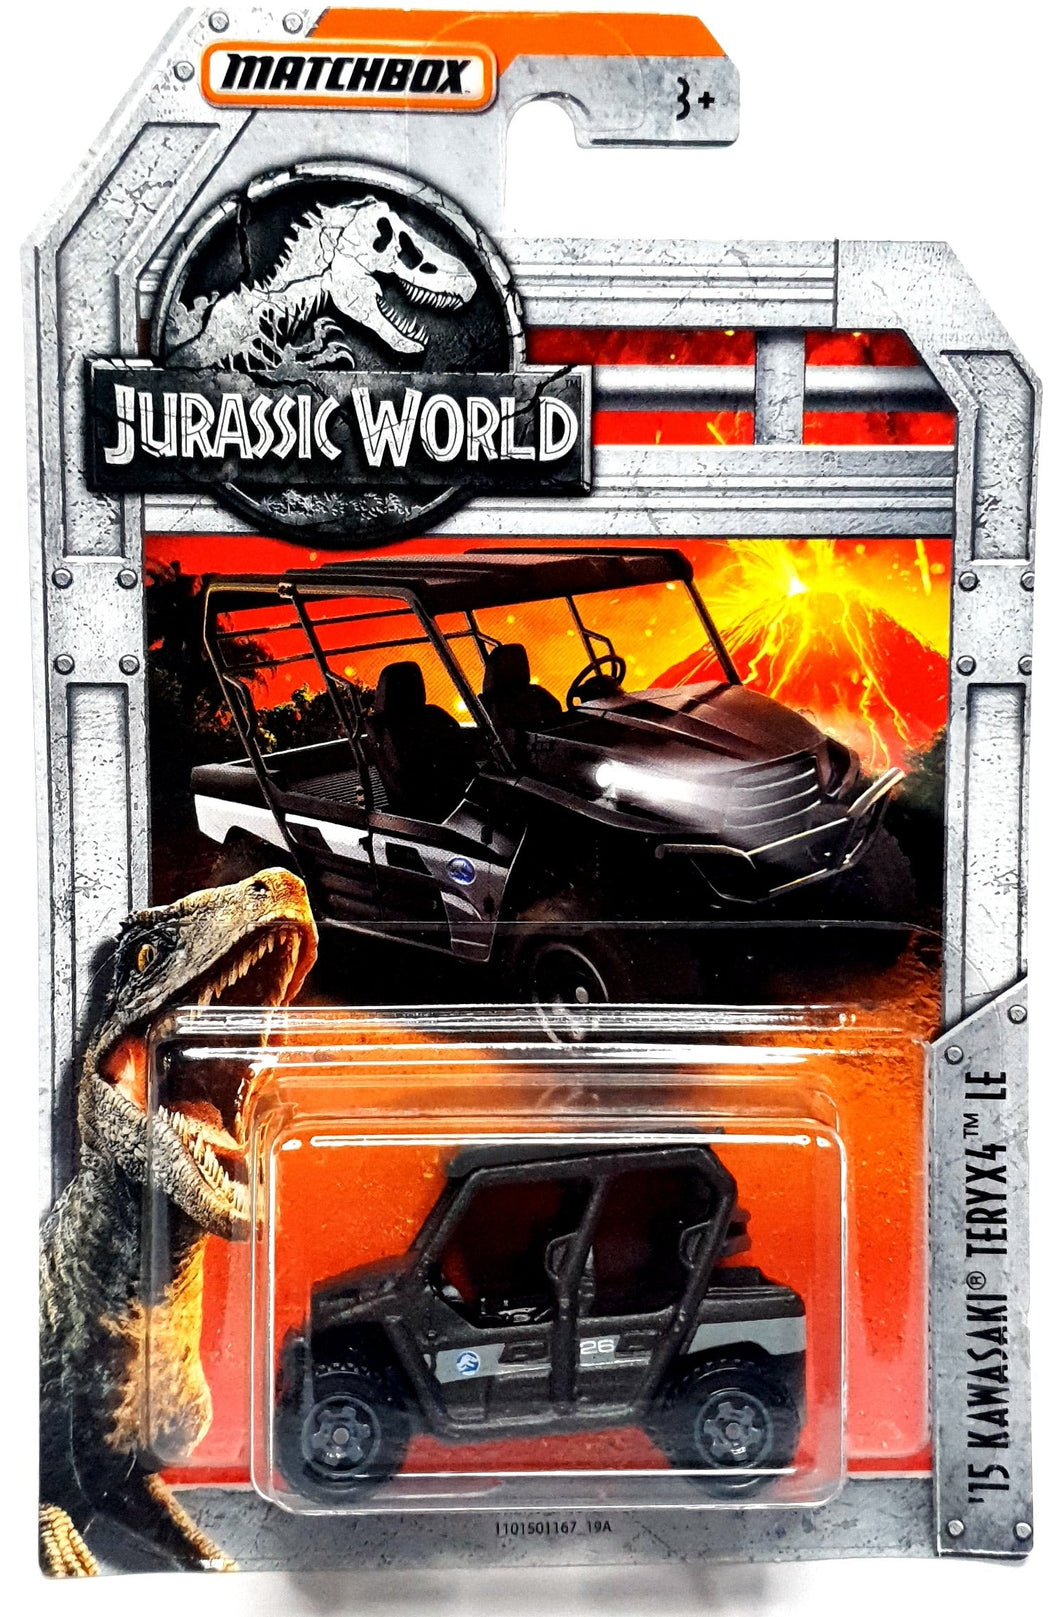 Matchbox - Jurassic World Toy Vehicles Die-Cast 1 of 6